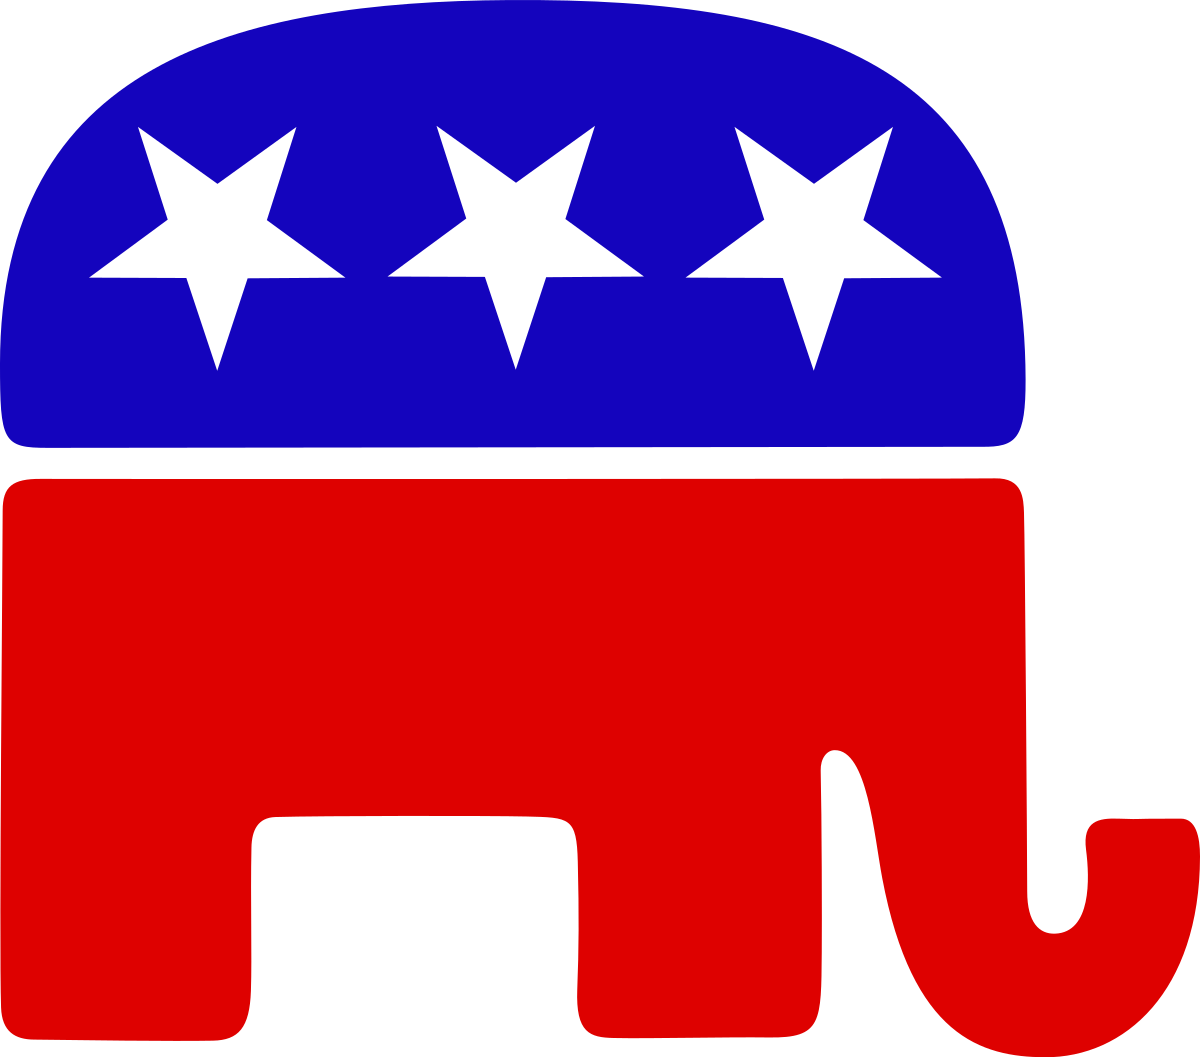 File:Republicanlogo.svg - Wikipedia